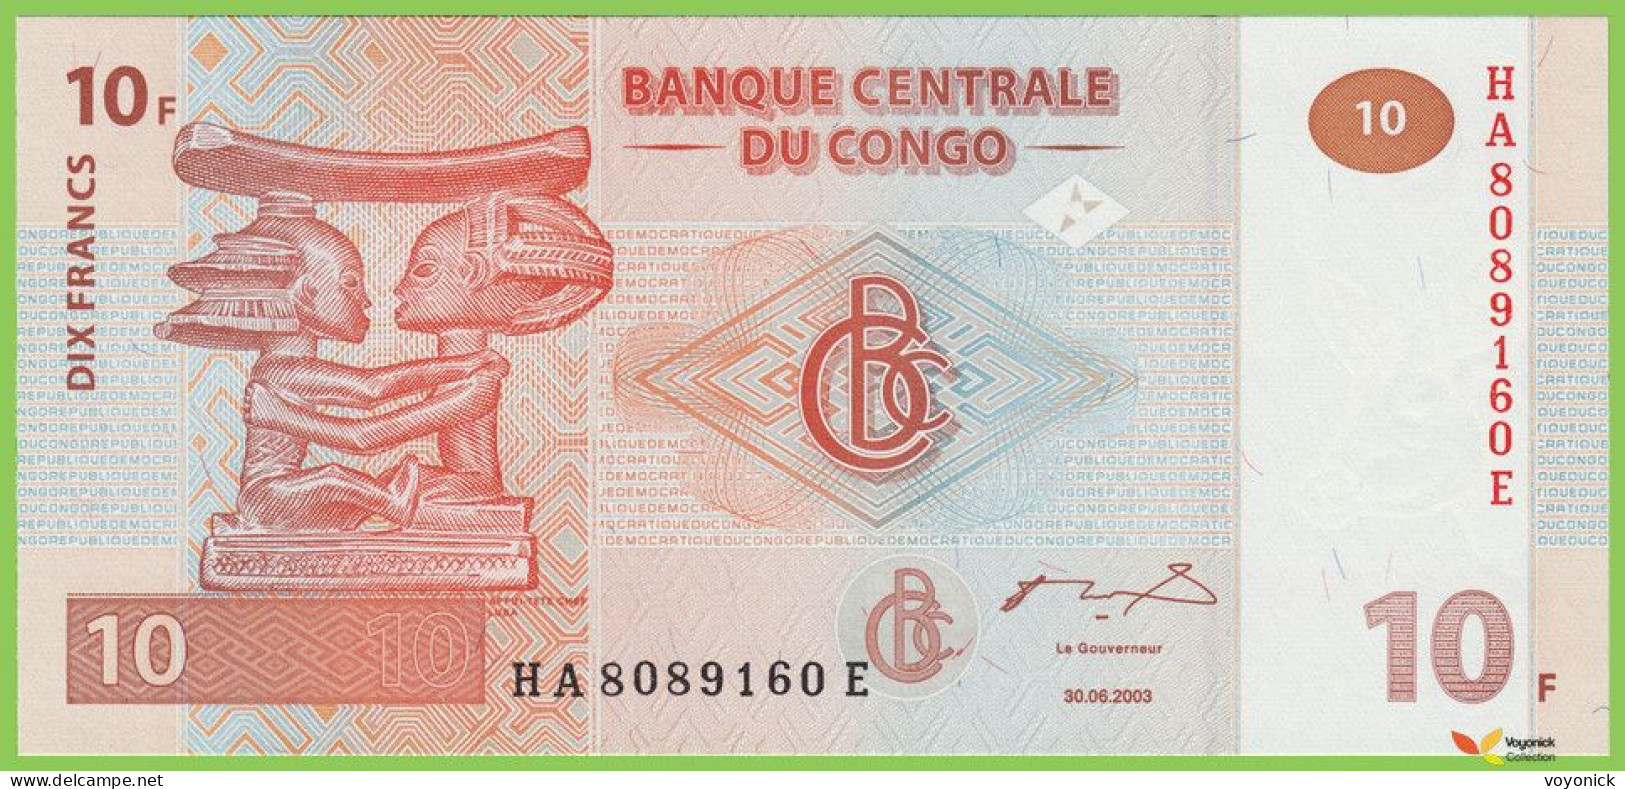 Voyo CONGO 10 Francs 2003 P93a B312 HA-E UNC - Repubblica Del Congo (Congo-Brazzaville)